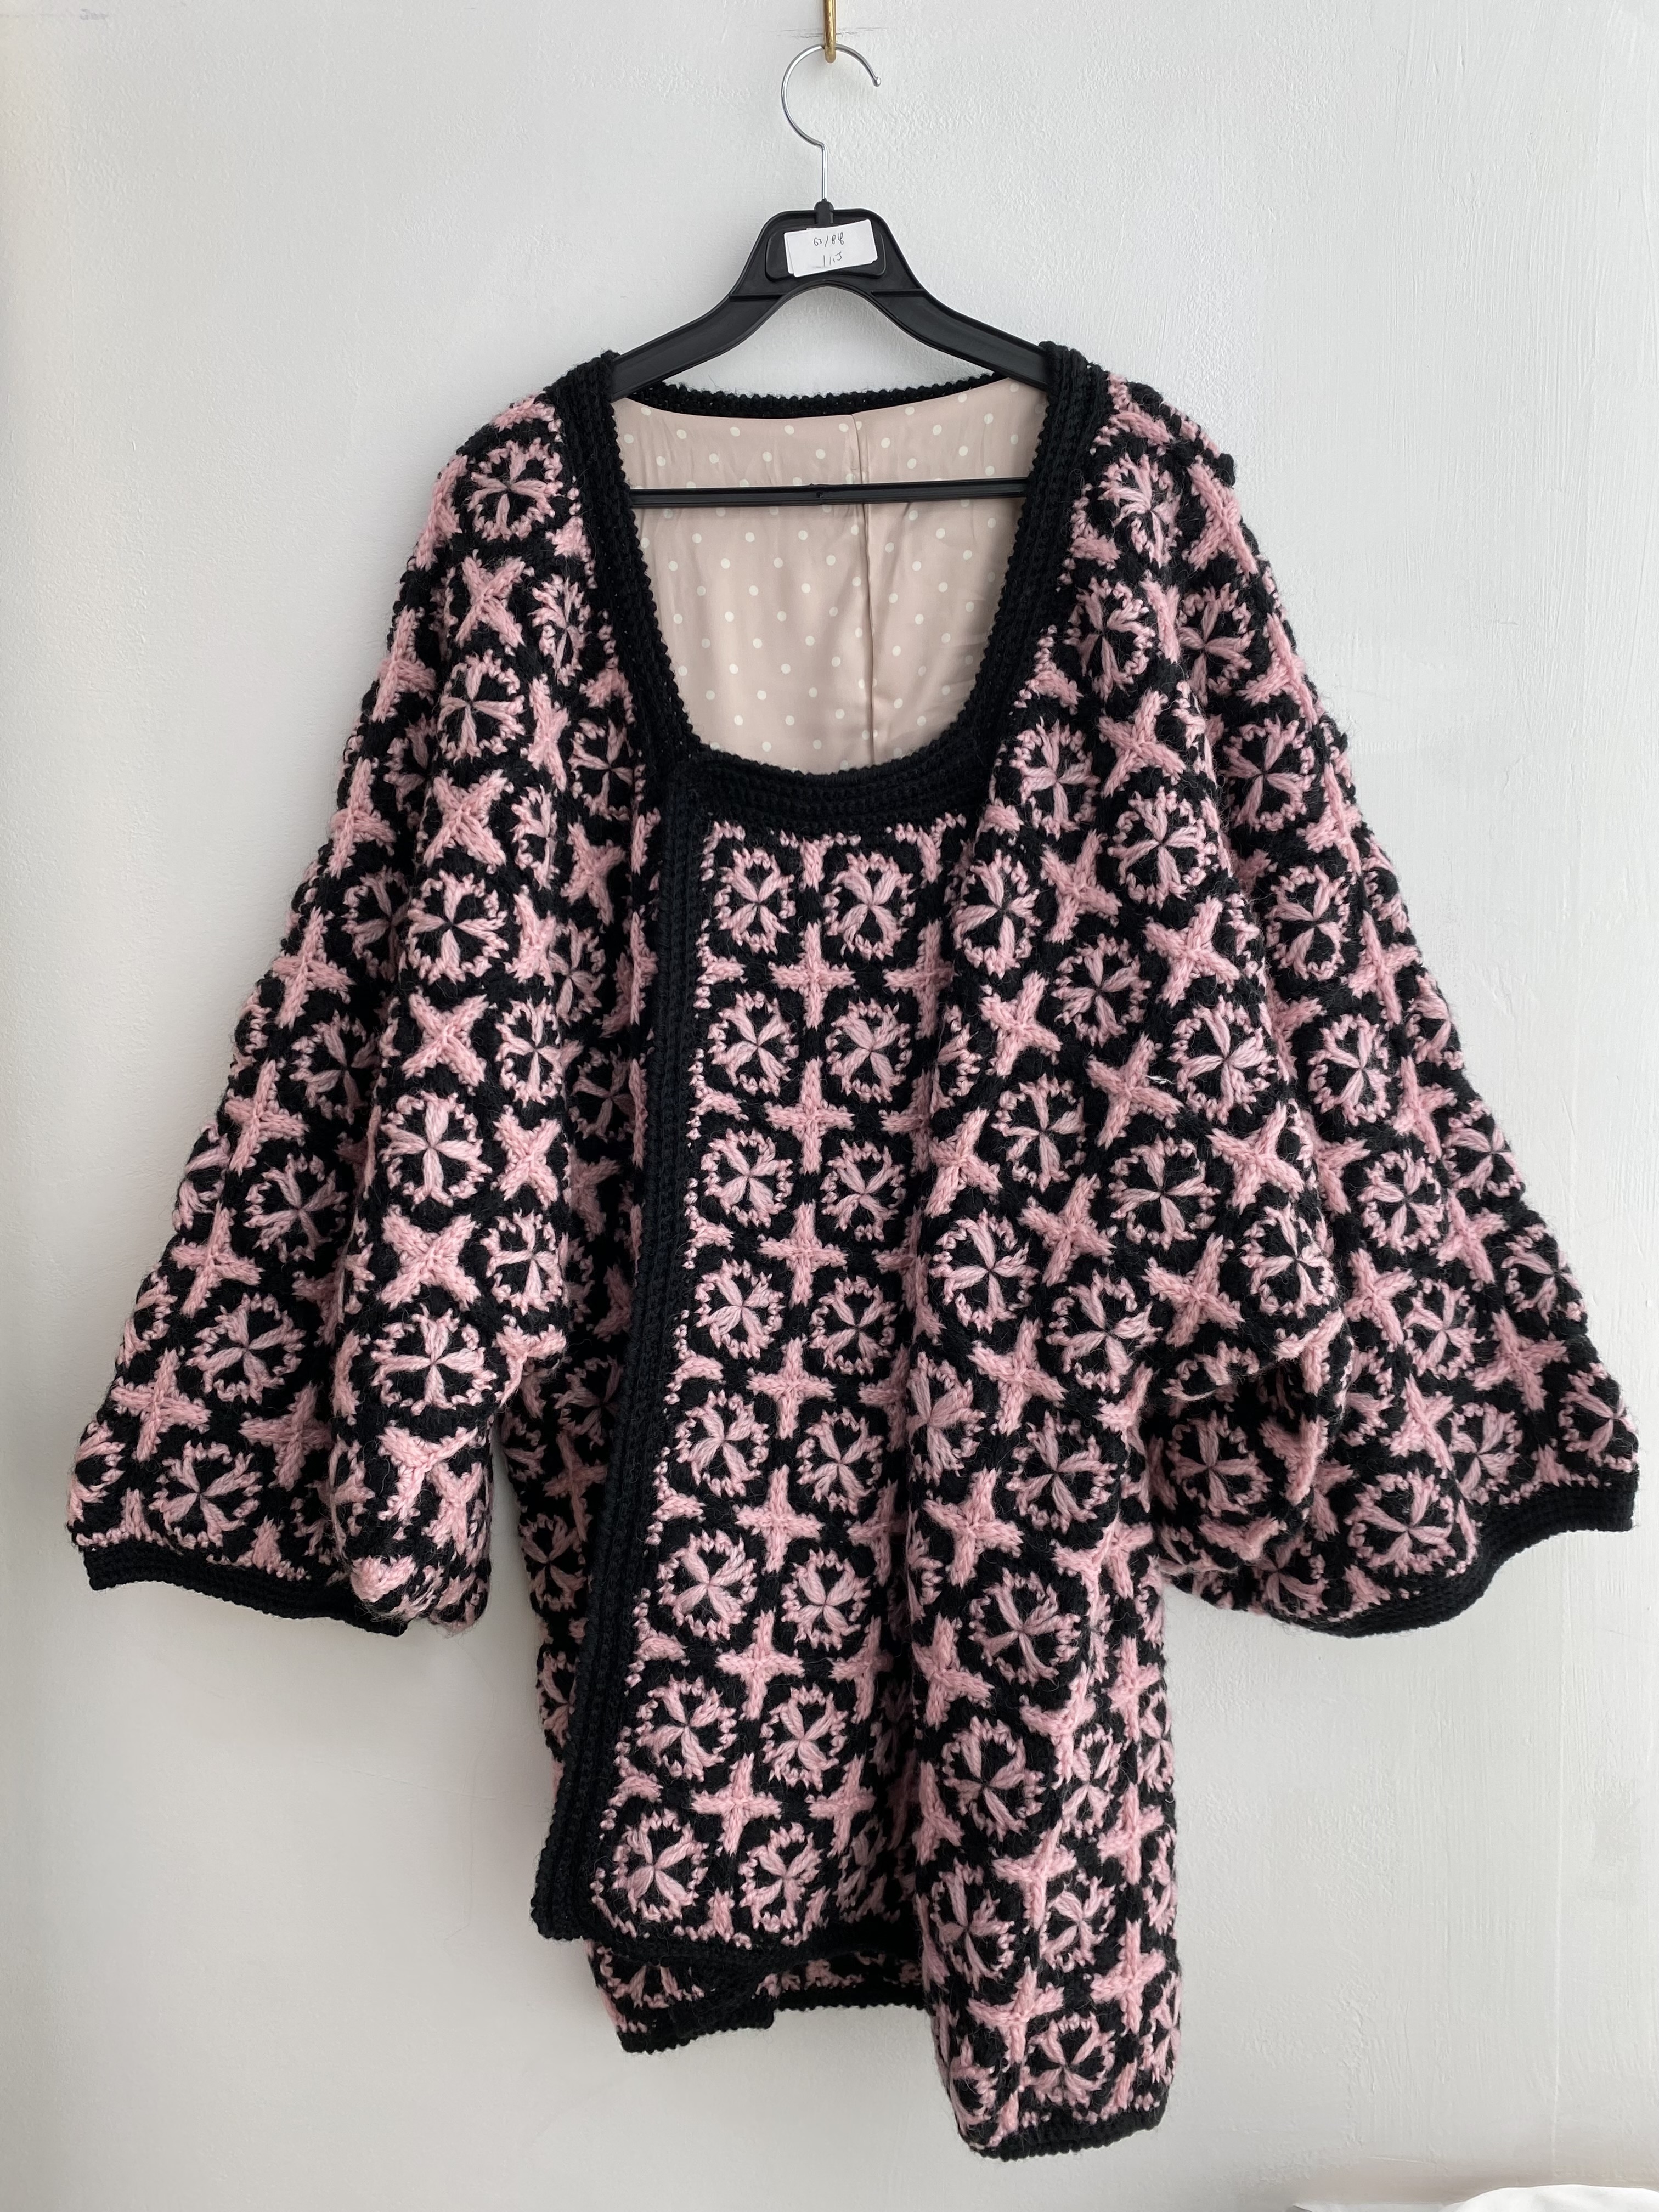 Black pink pattern heavyweight boxy fit knit